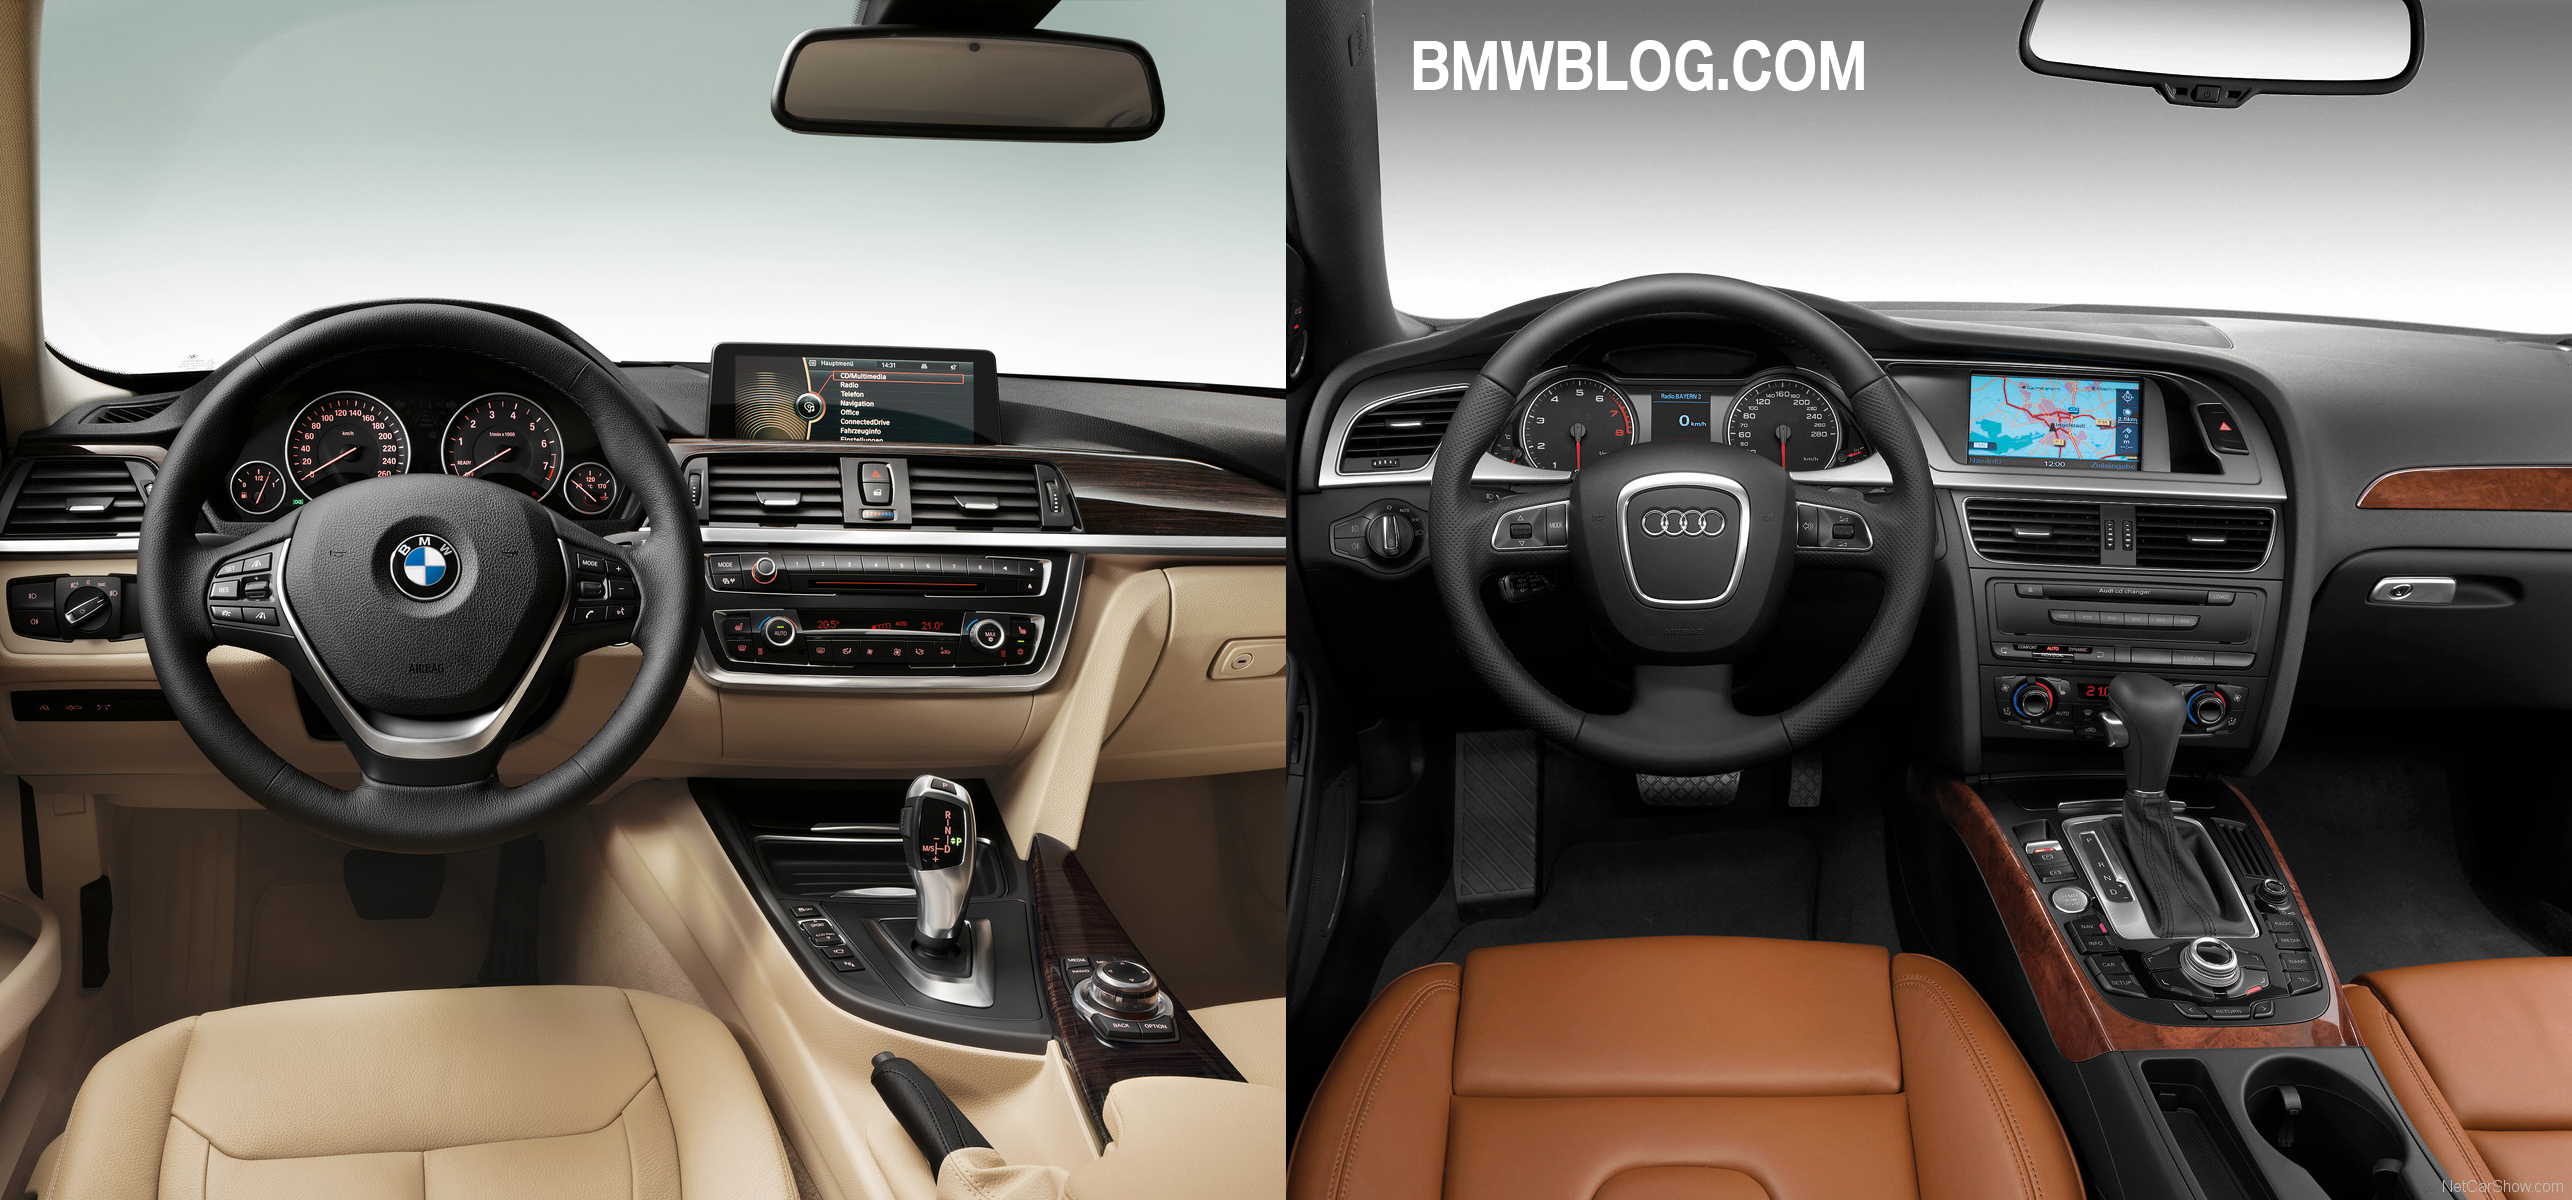 Audi a4 bmw 3 series comparison #7